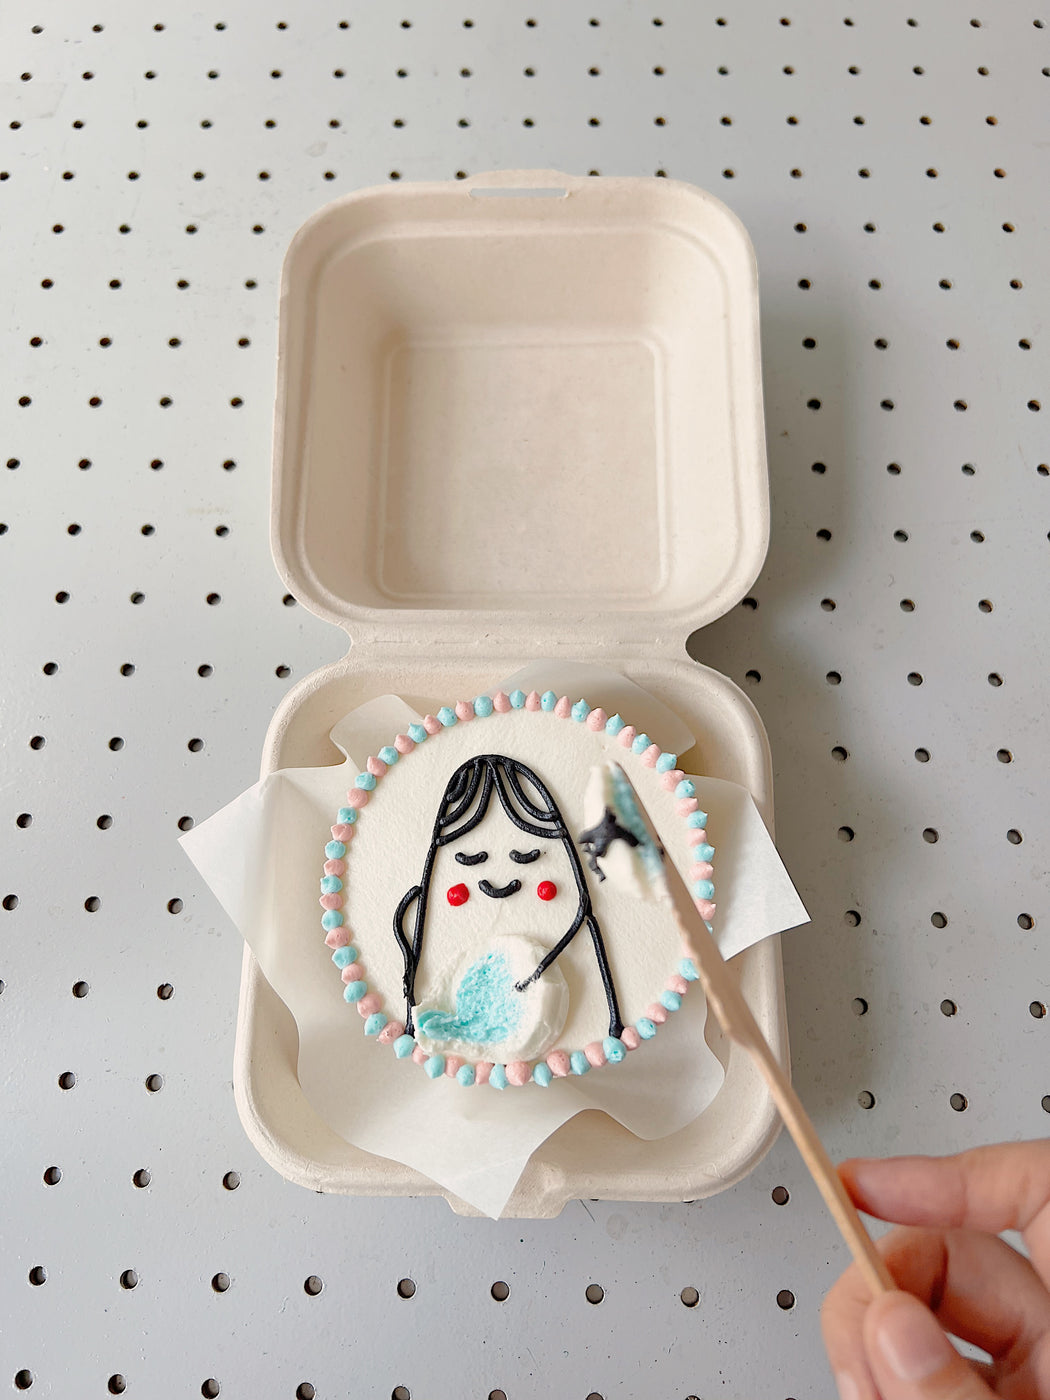 Peekaboo Surprise (Gender reveal cake)